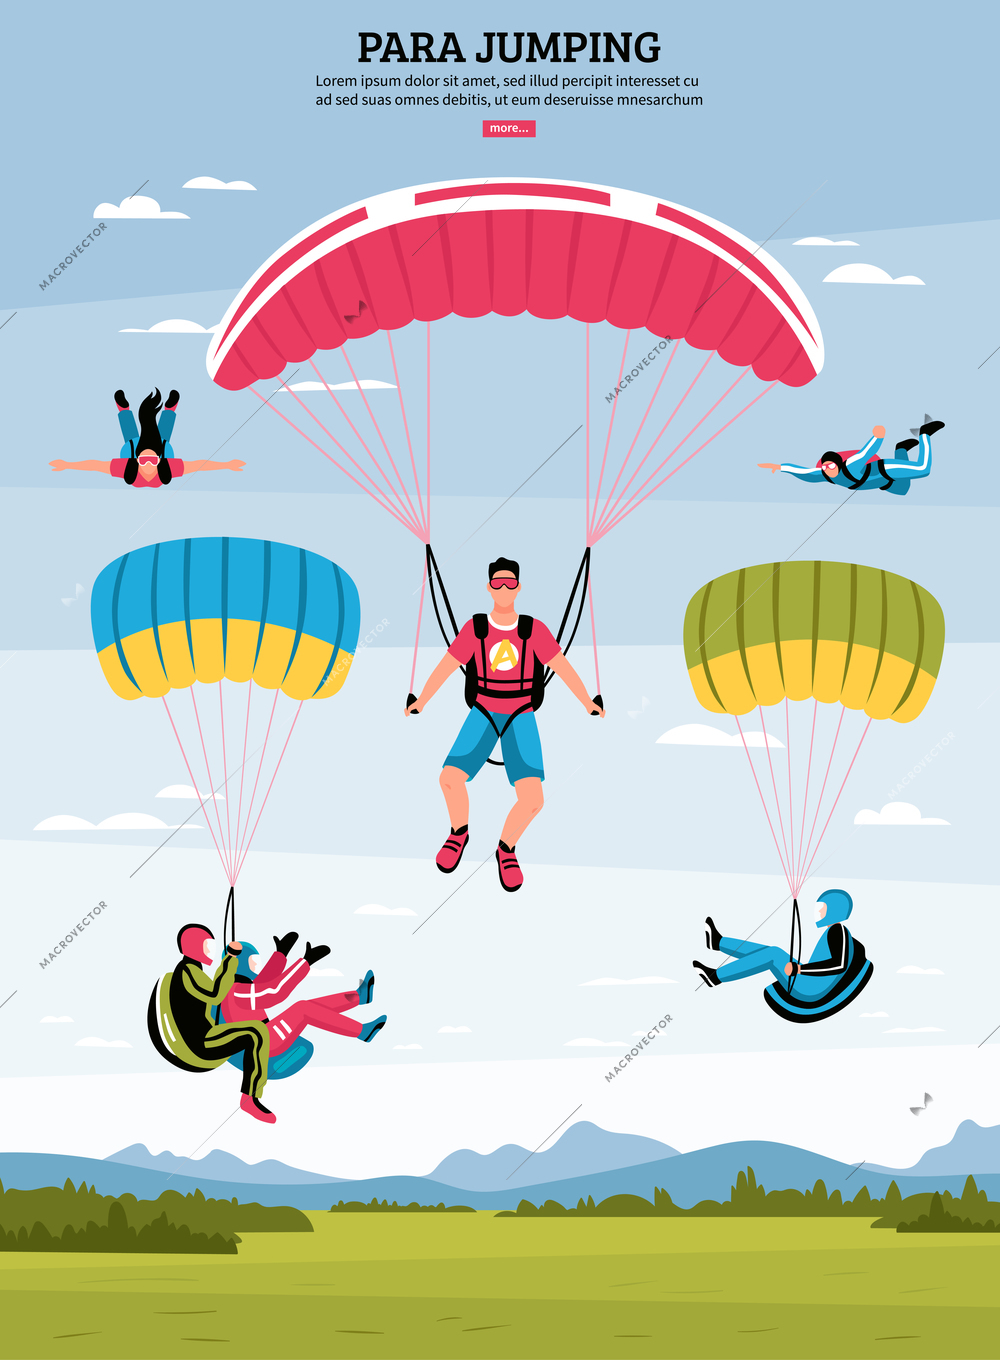 Parajumping poster with parachuting and para gliding symbols flat vector illustration